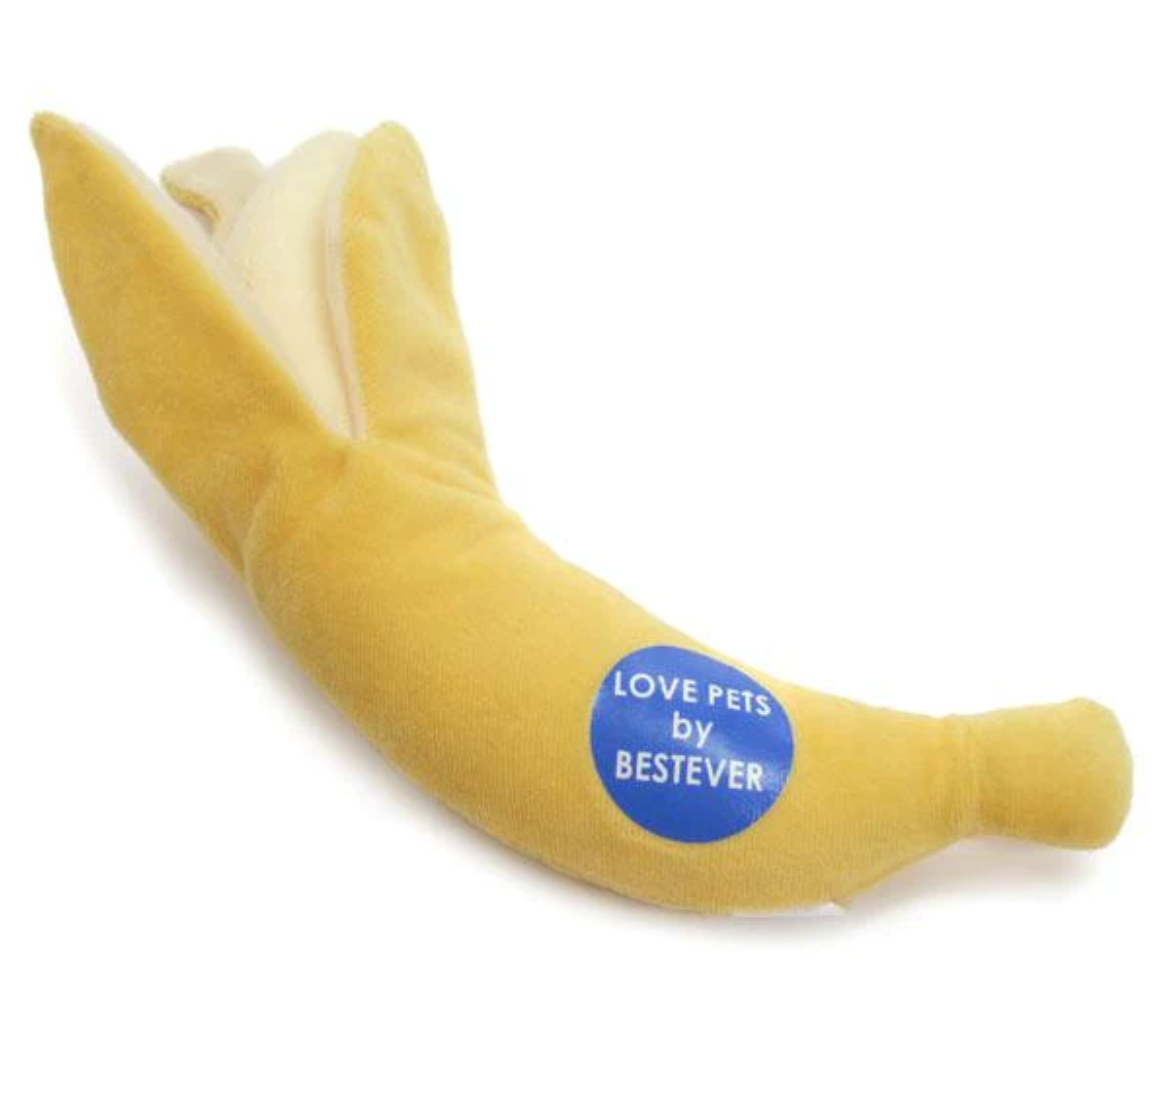 水果系列 — 香蕉寵物玩具